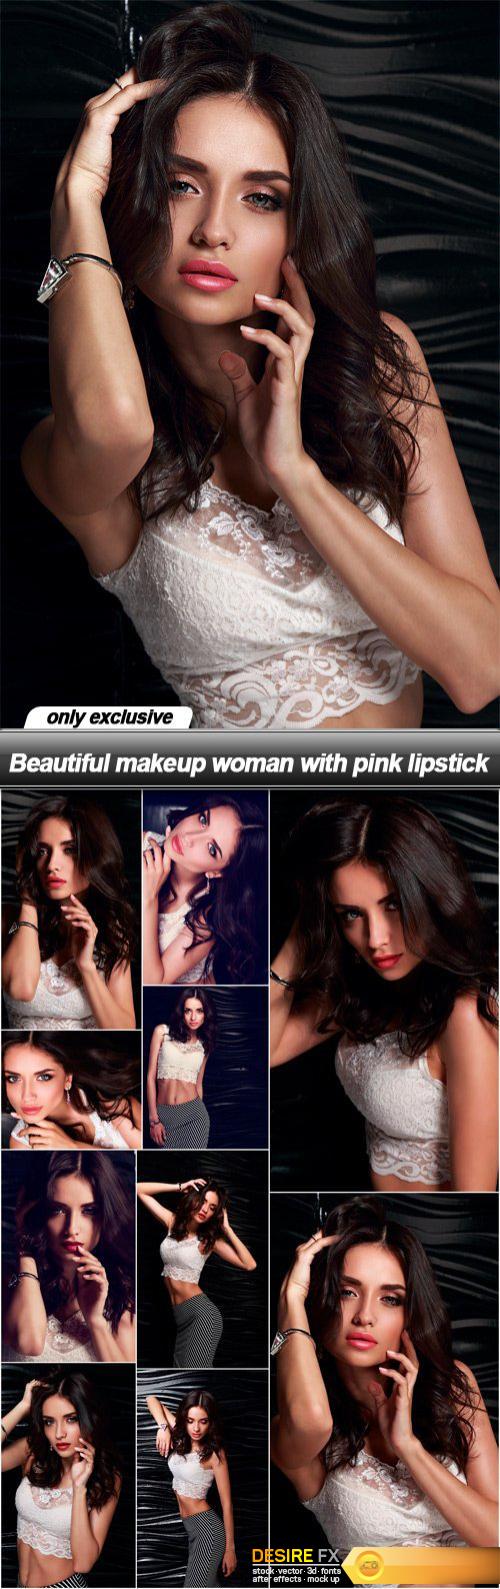 Beautiful makeup woman with pink lipstick - 10 UHQ JPEG